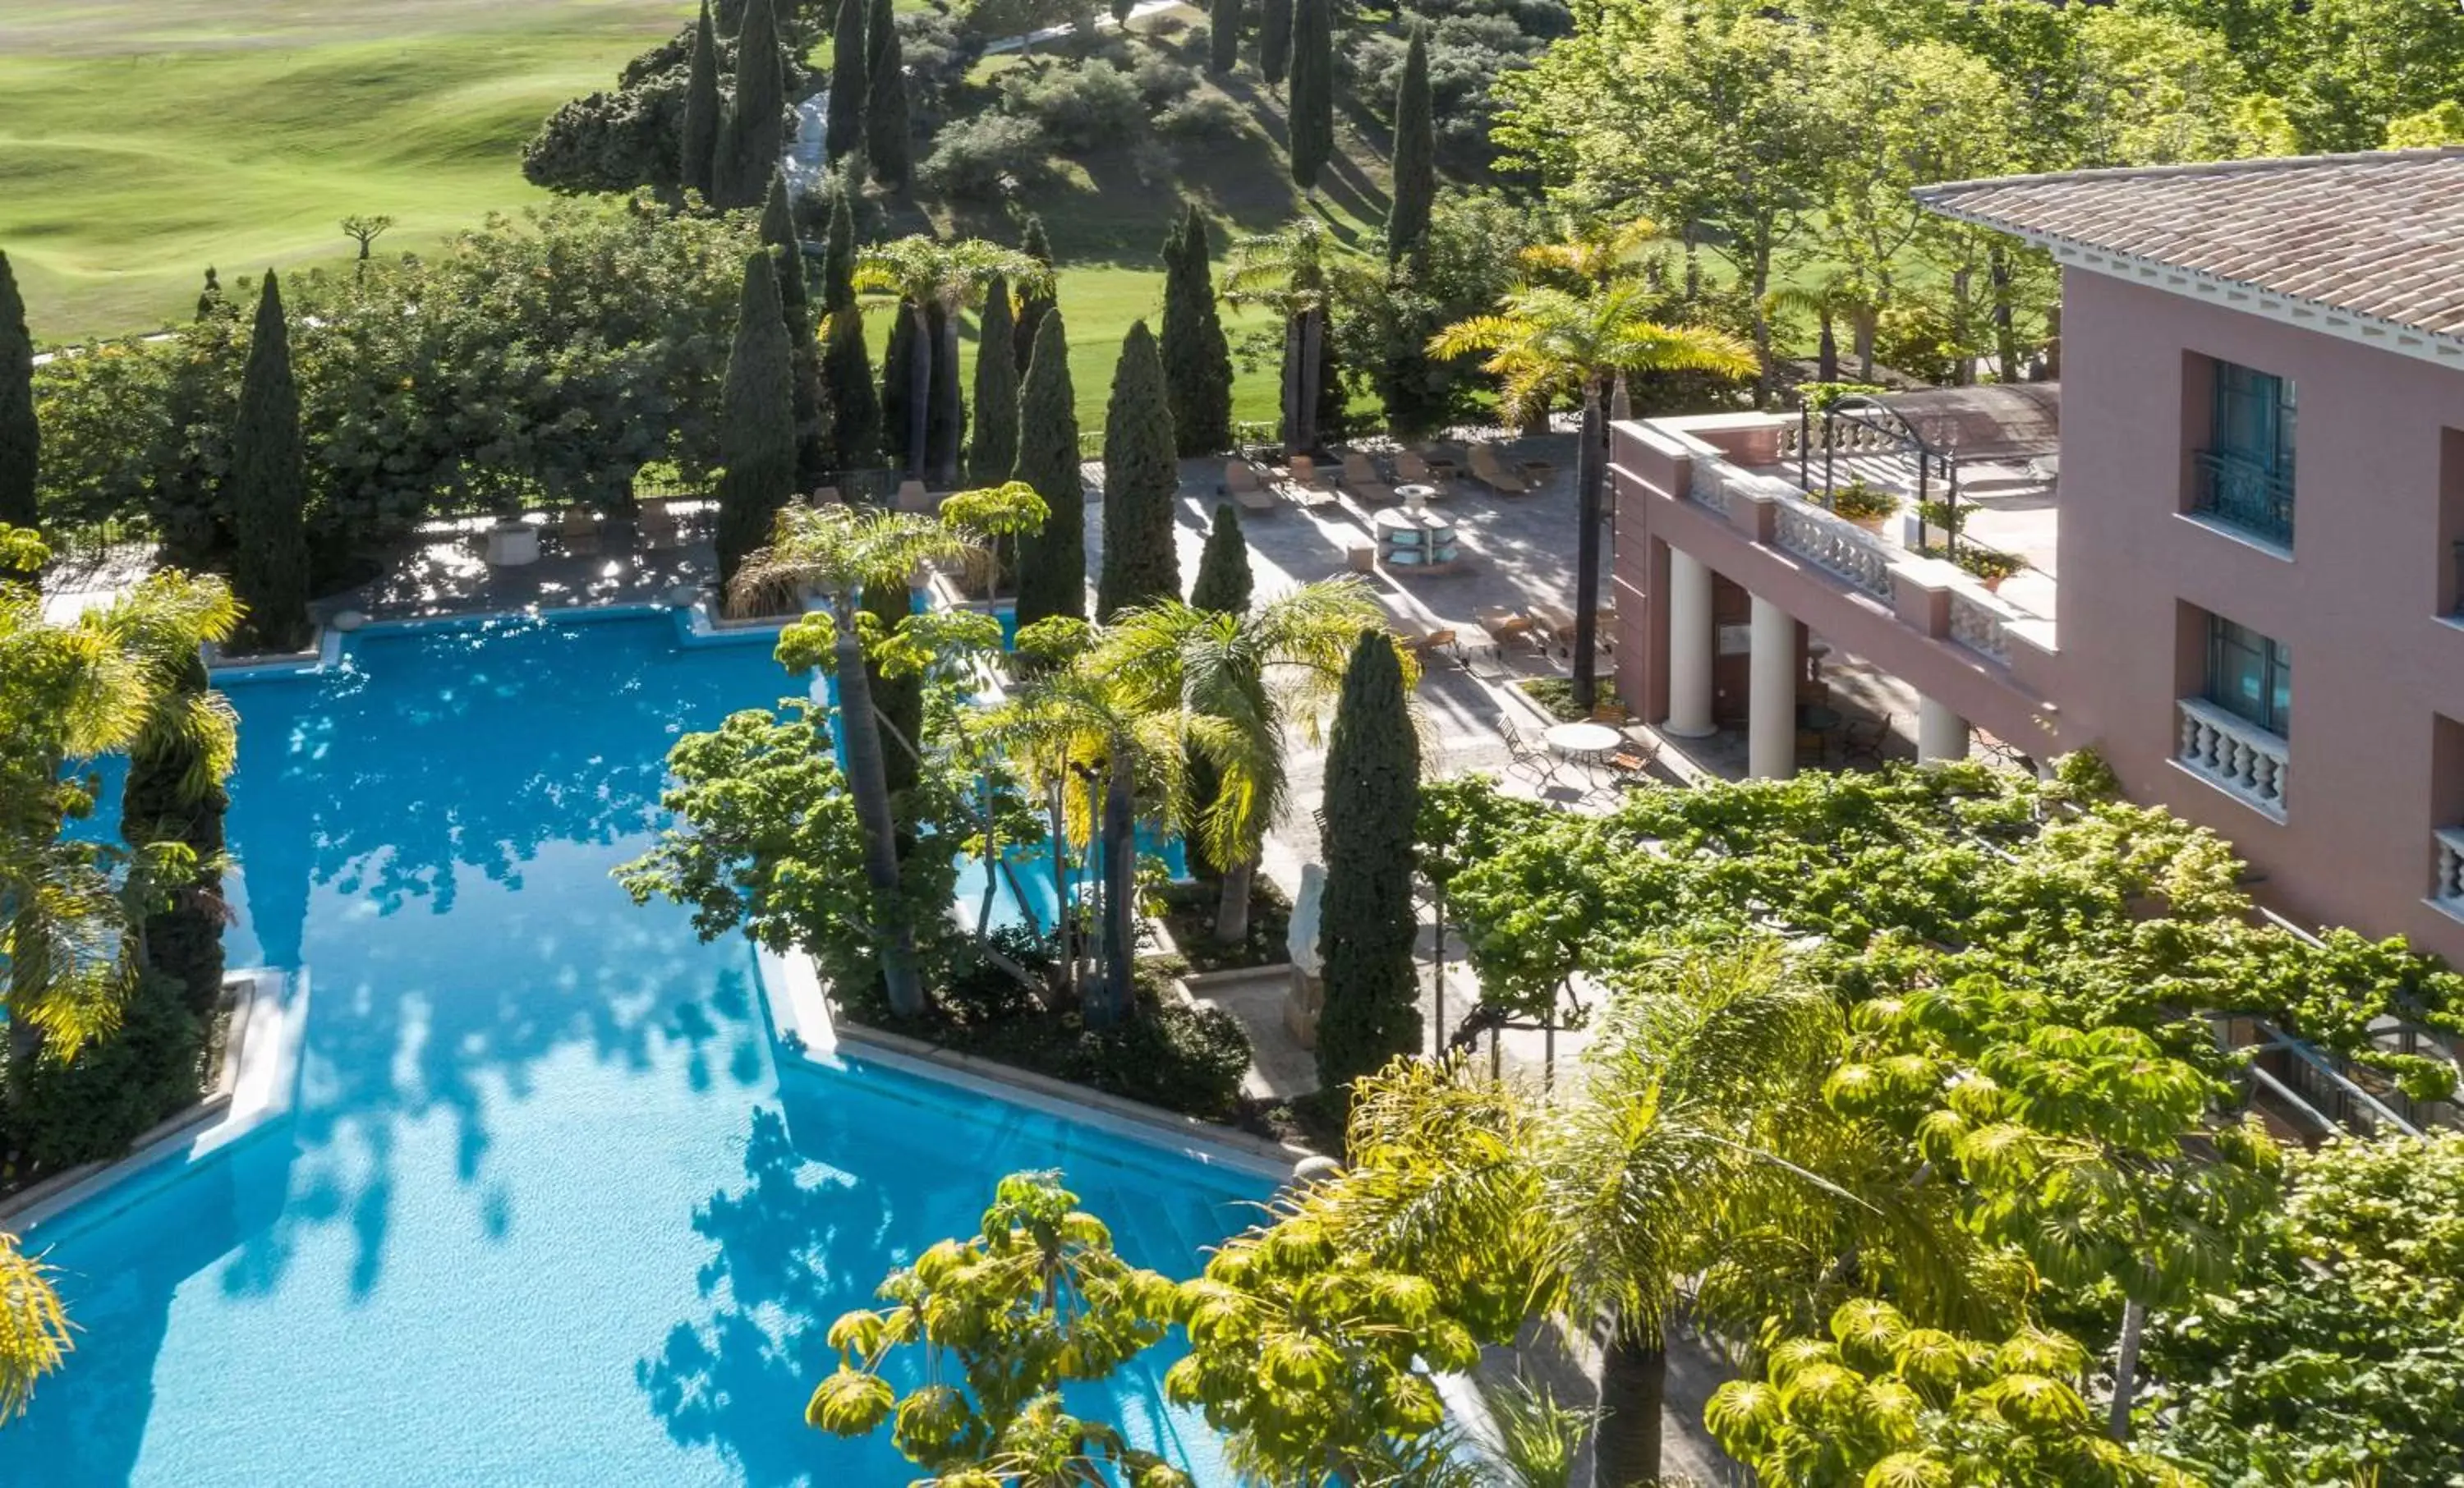 Property building, Pool View in Anantara Villa Padierna Palace Benahavís Marbella Resort - A Leading Hotel of the World